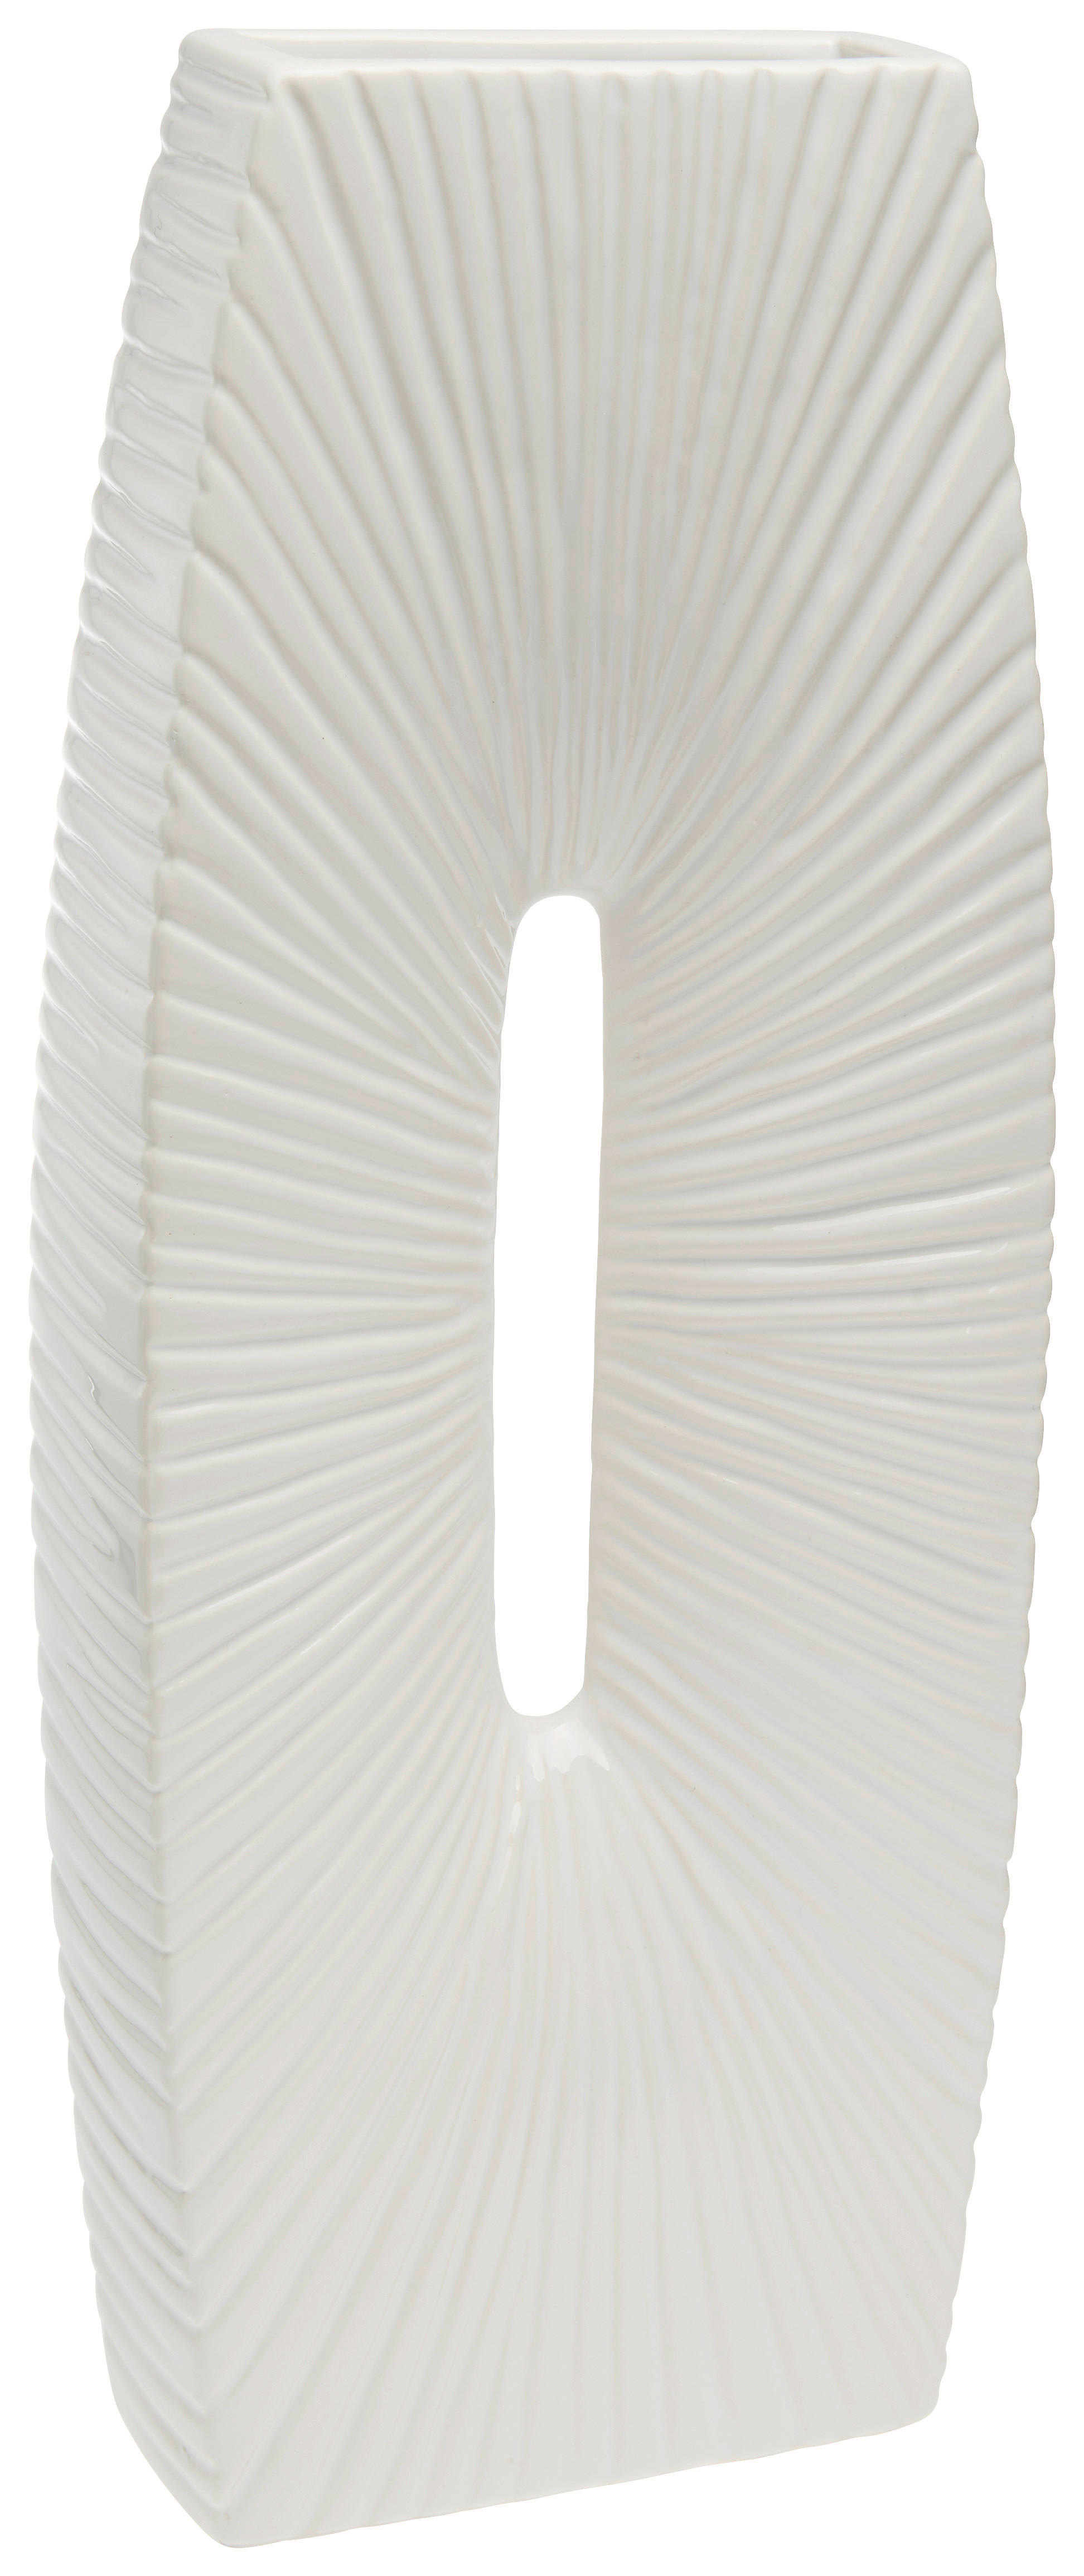 VASE 41.4 cm  - Weiß, Design, Keramik (15/38/5cm) - Ambia Home